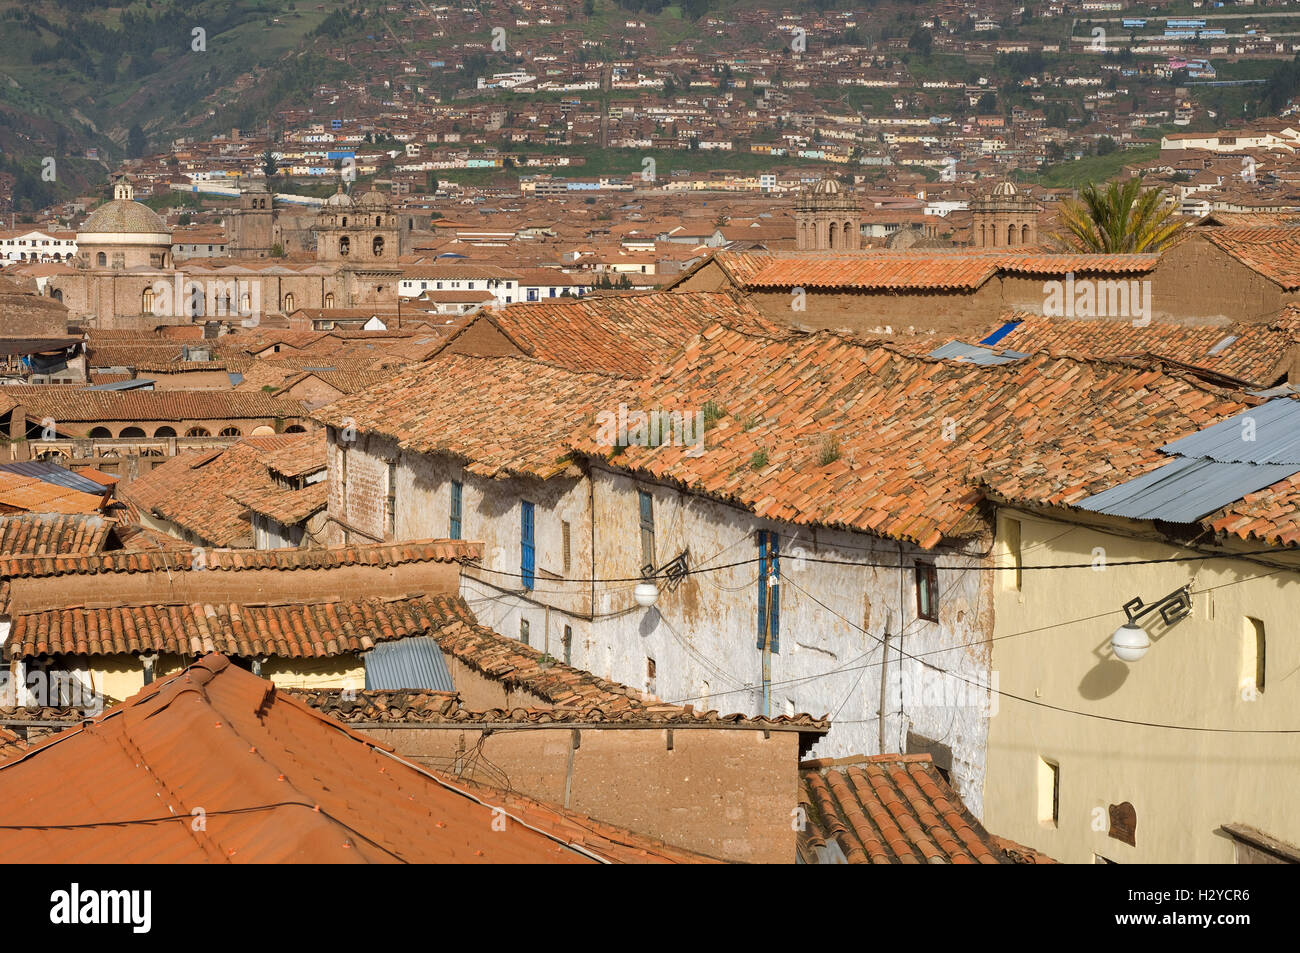 Alte Stadt von Cuzco wo Ziegeldächer dominieren. Cuzco. In den peruanischen Anden gelegene entwickelt Cuzco, unter der Inka-Herrscher Pachac Stockfoto